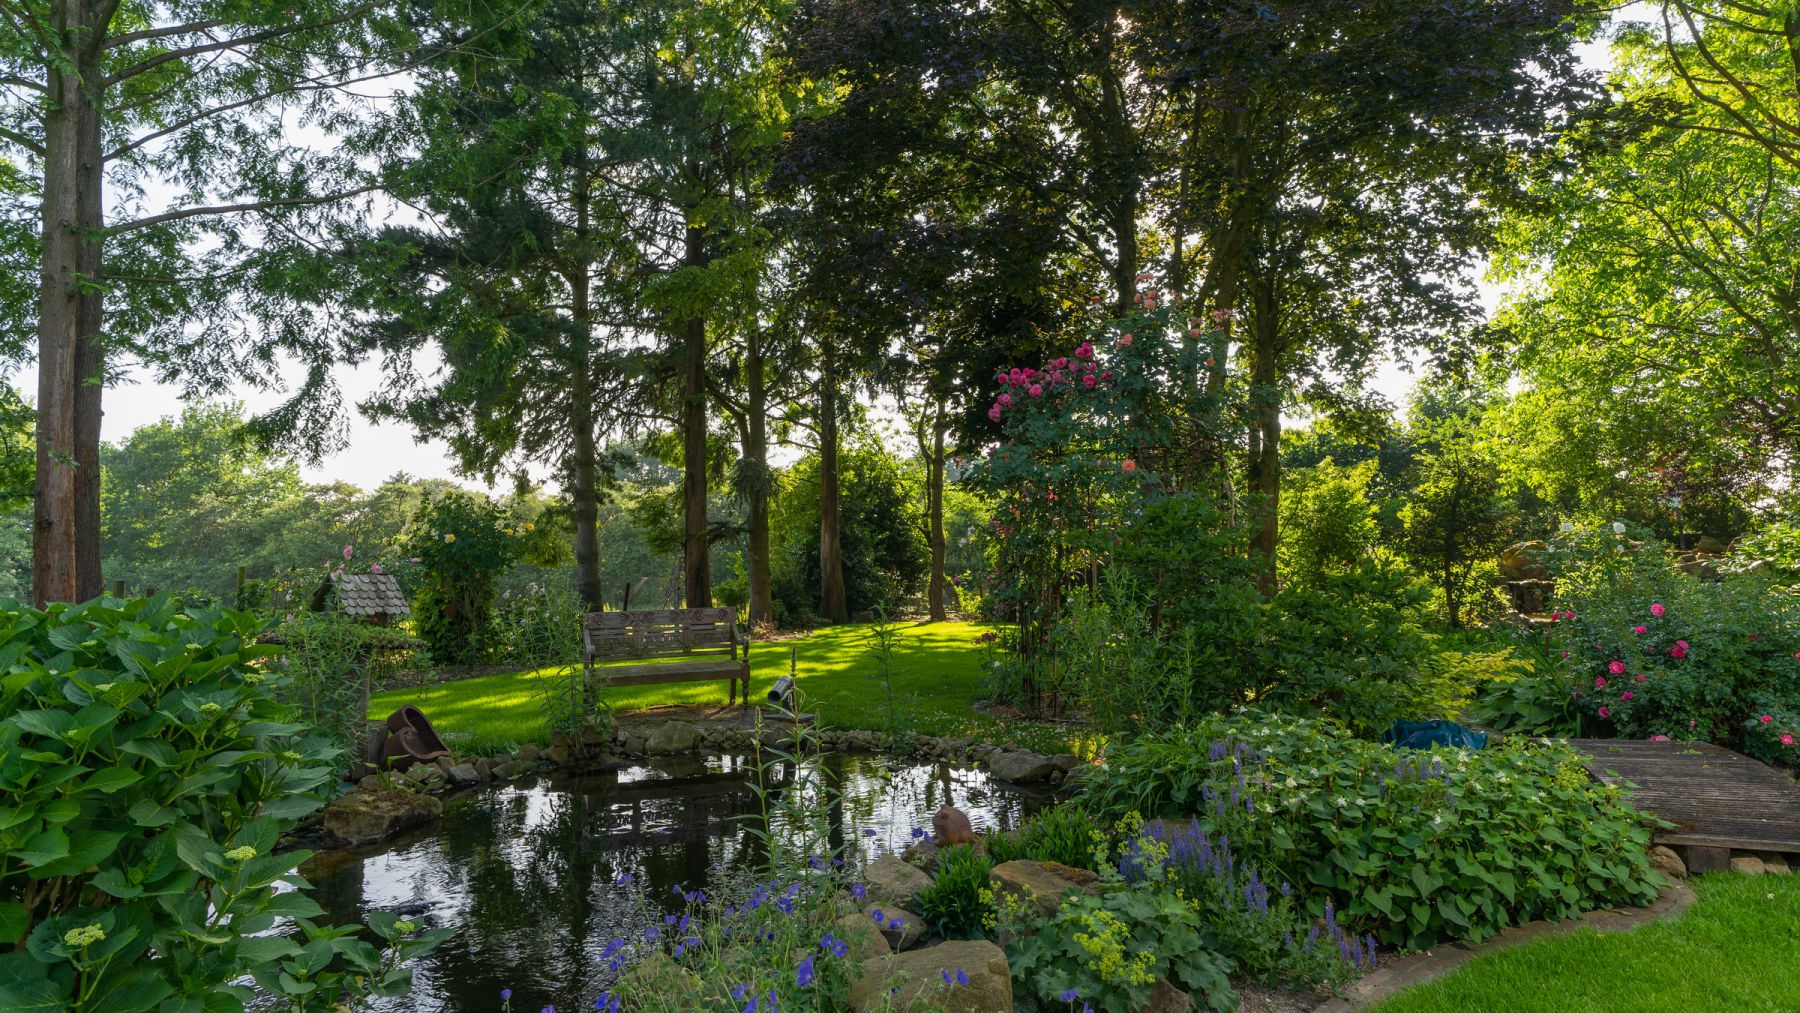 2.2 Alle Elemente in großer Geste vereint - weitläufiger Naturgarten in Bocholt